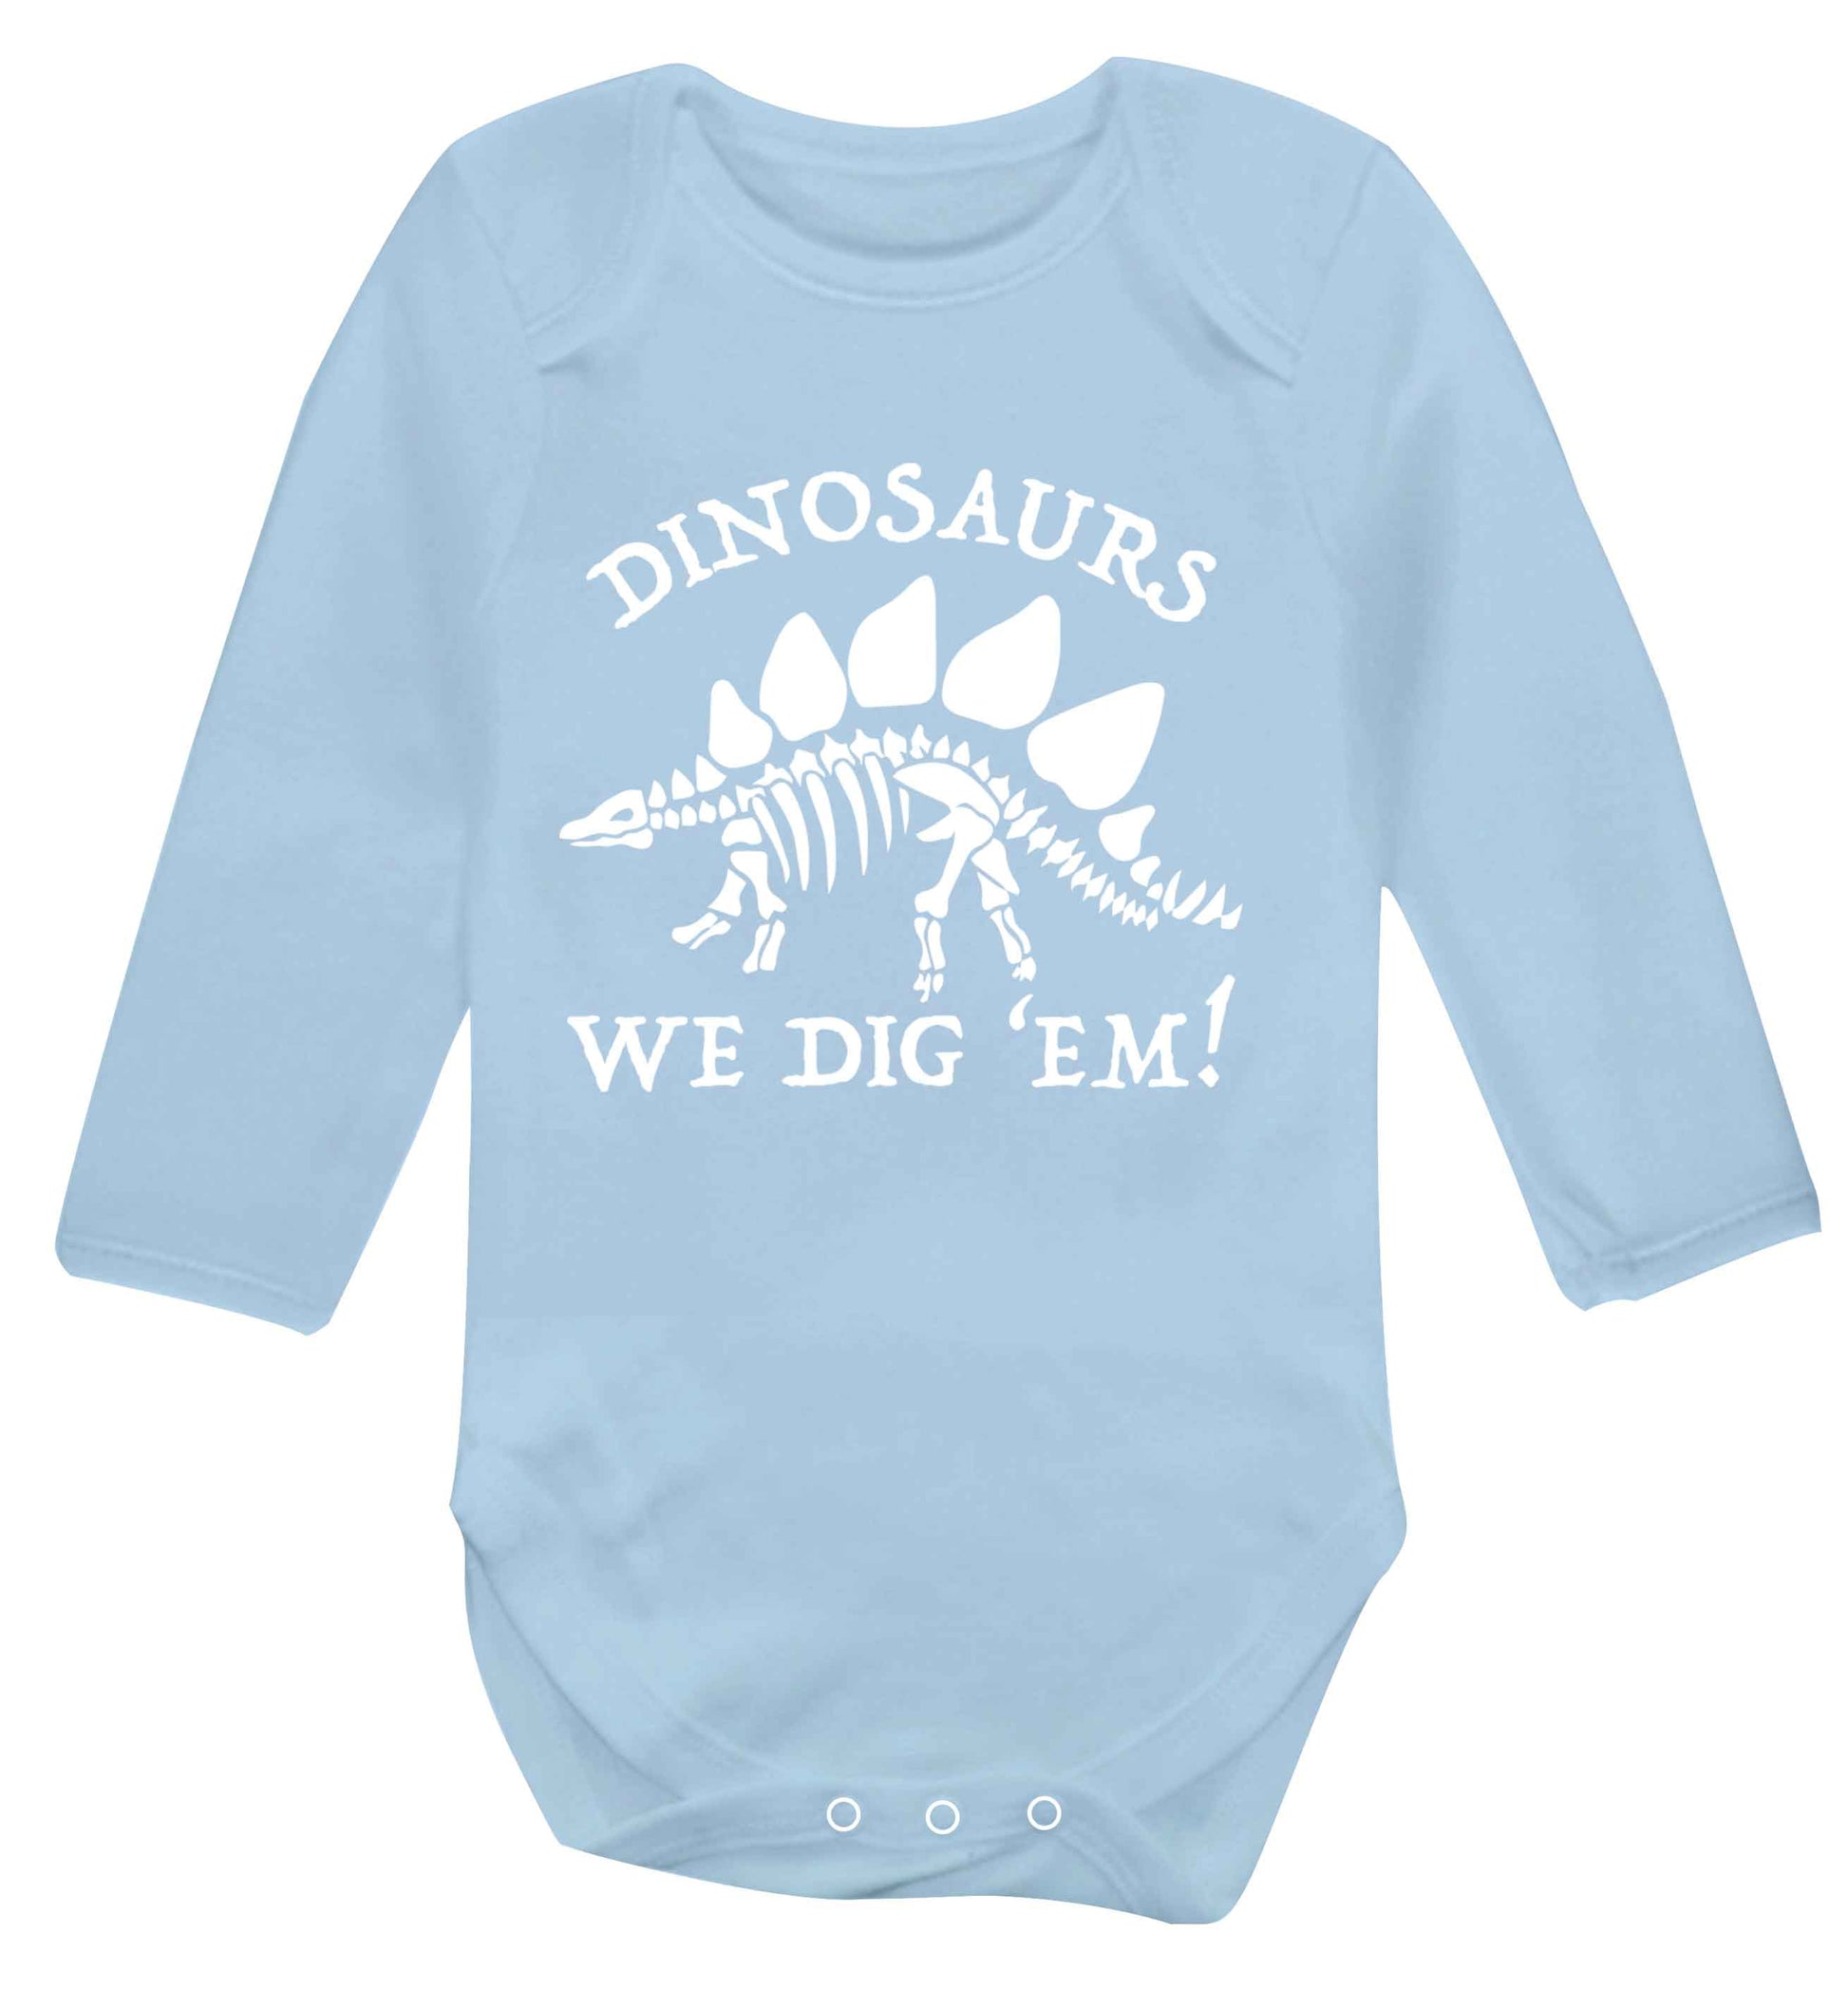 Dinosaurs we dig 'em! Baby Vest long sleeved pale blue 6-12 months